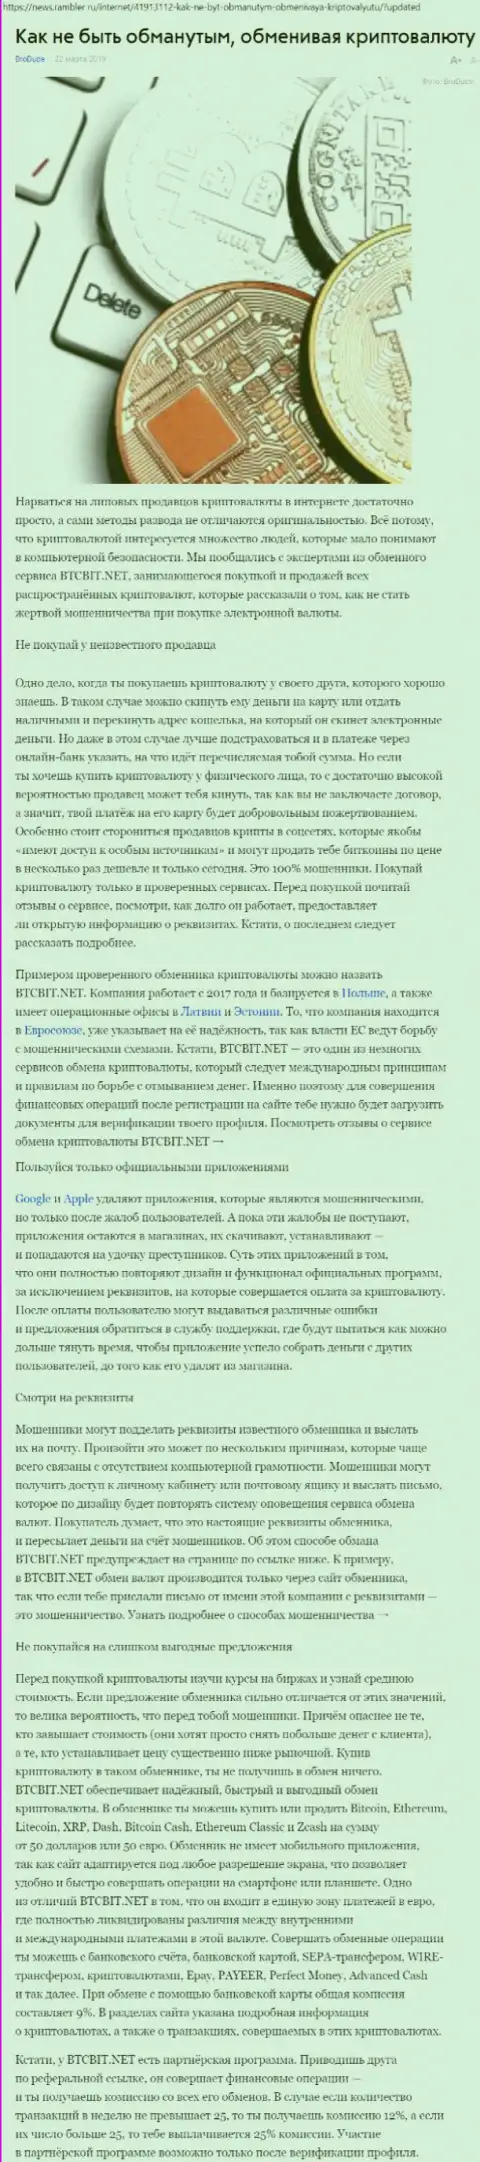 Публикация об онлайн-обменнике BTCBit на News Rambler Ru